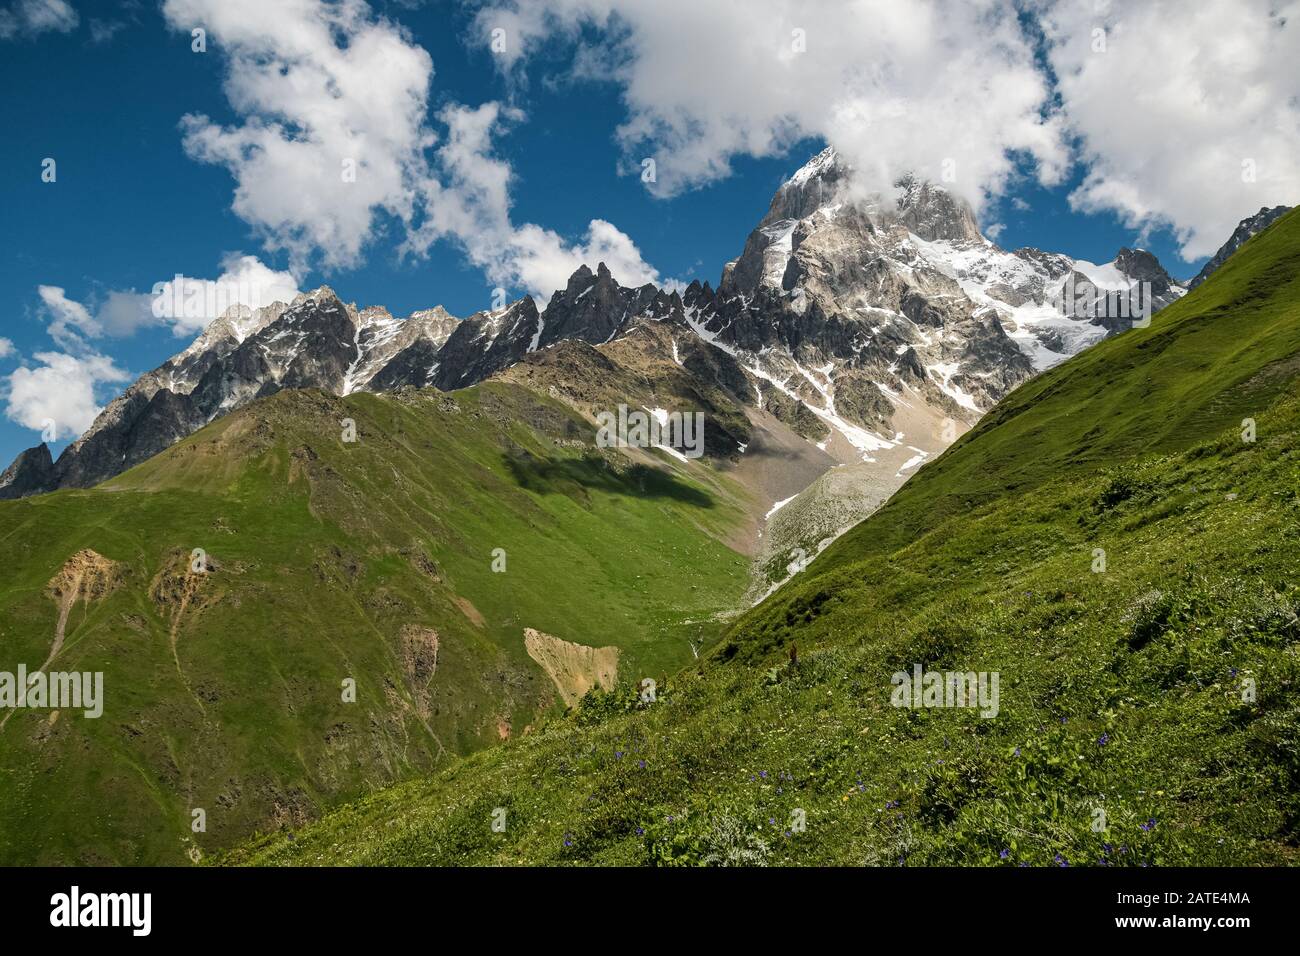 Caucase paysage d'été. Vue vers le sommet de l'ofMt. Ushba, l'une des montagnes les plus meurtrières de la région de Svaneti en Géorgie Banque D'Images